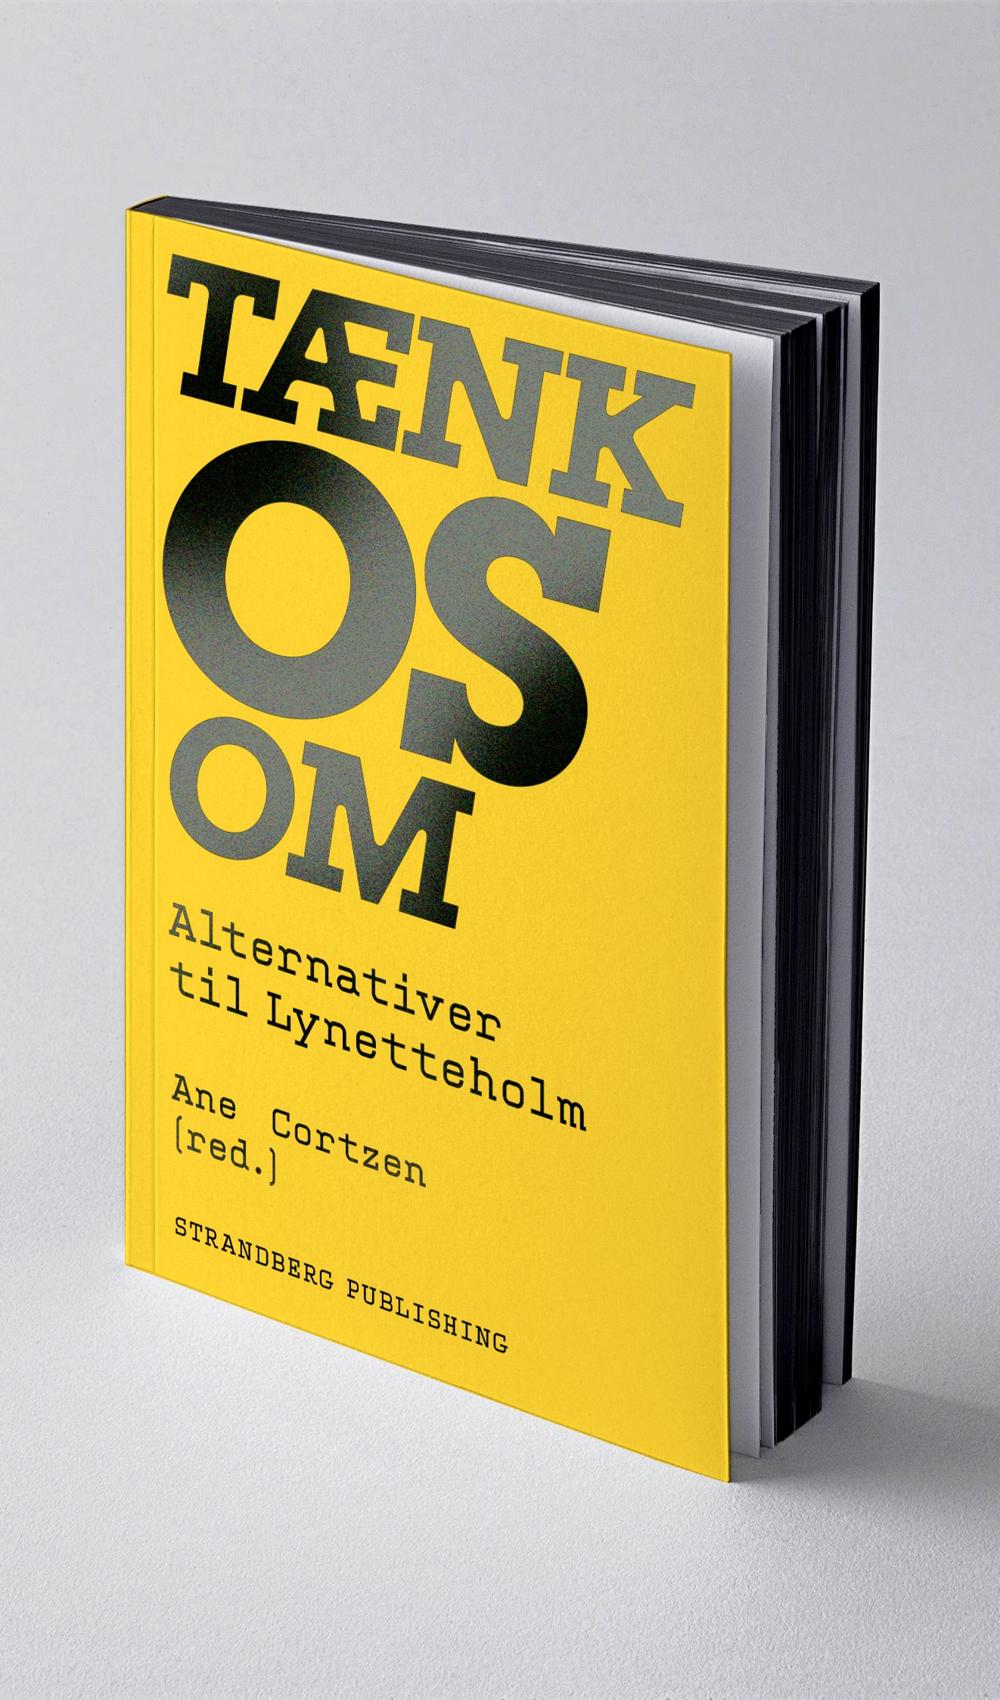 Bogen "Tænk Os Om" indeholder 12 tekster med forskellige forslag til alternativer til halvøen Lynetteholm. 